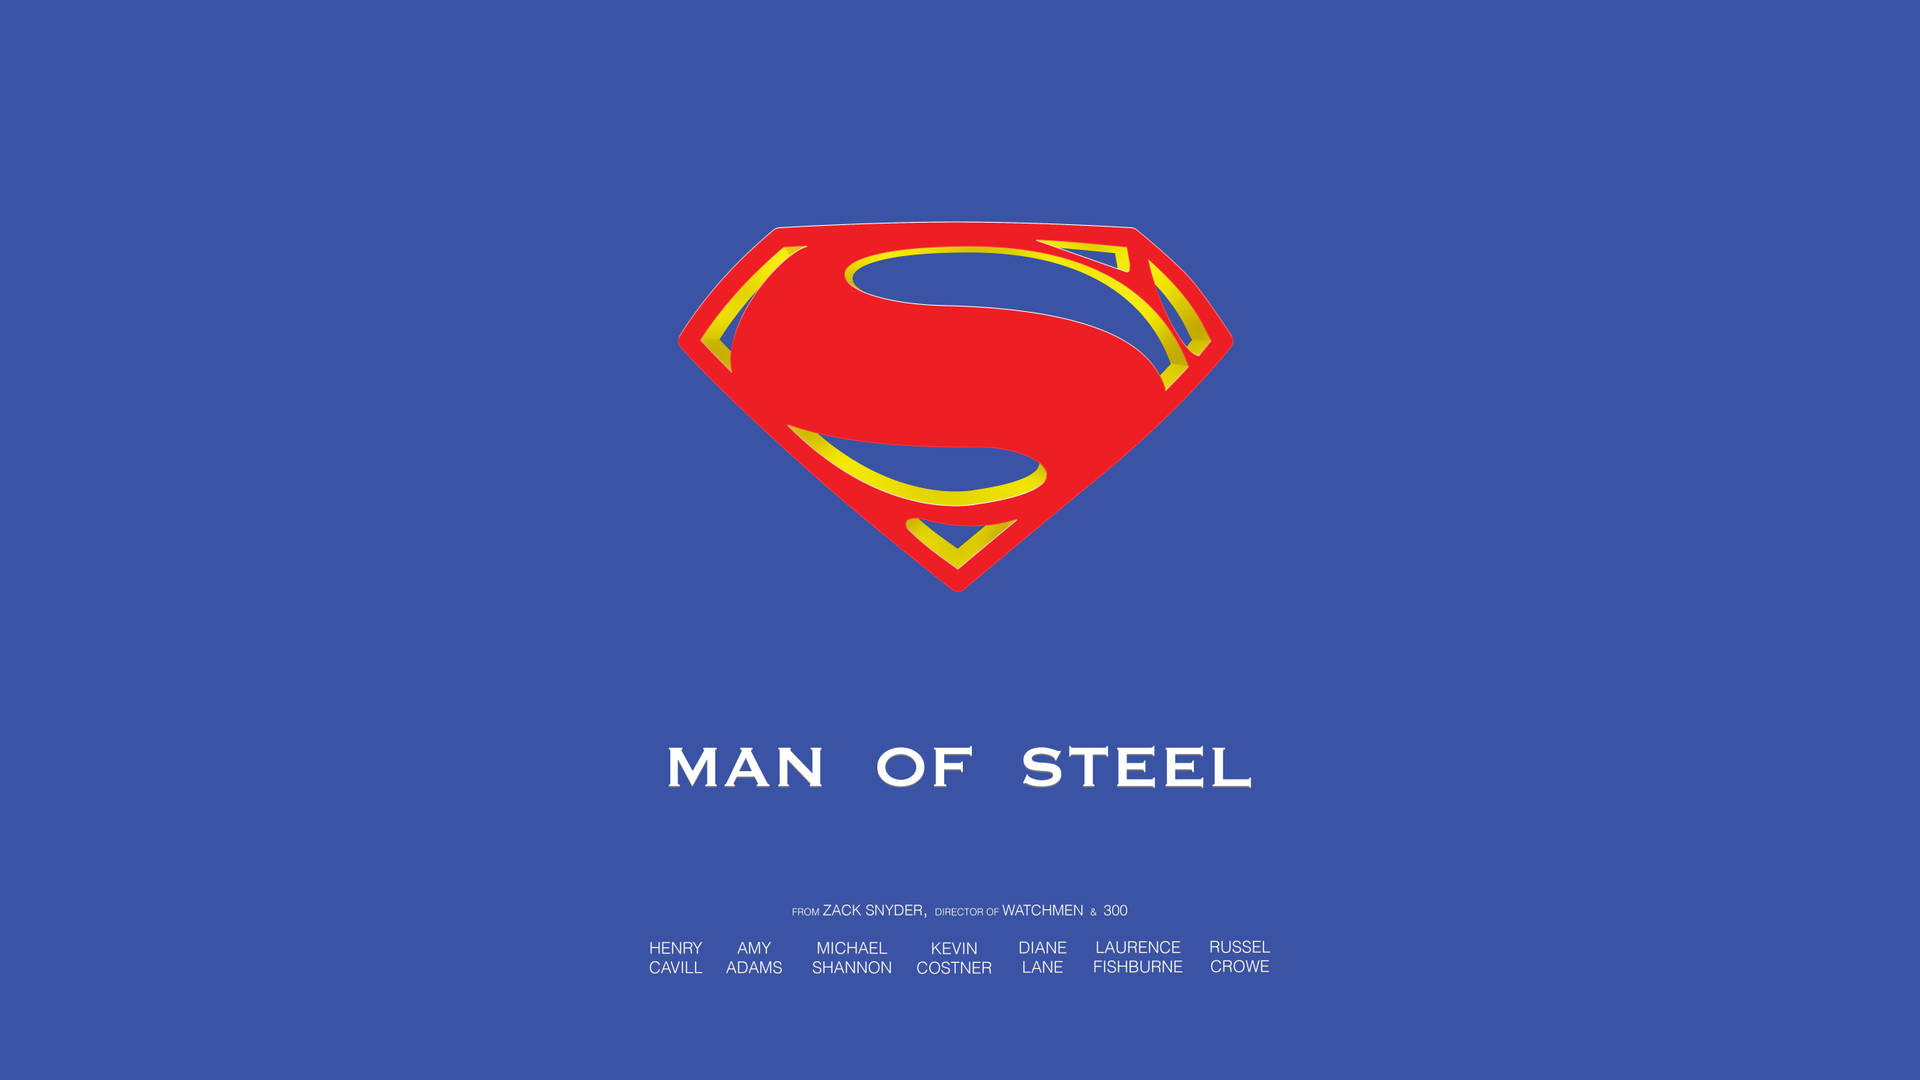 Manof Steel-skådespelarna Superman-logotypen. Wallpaper